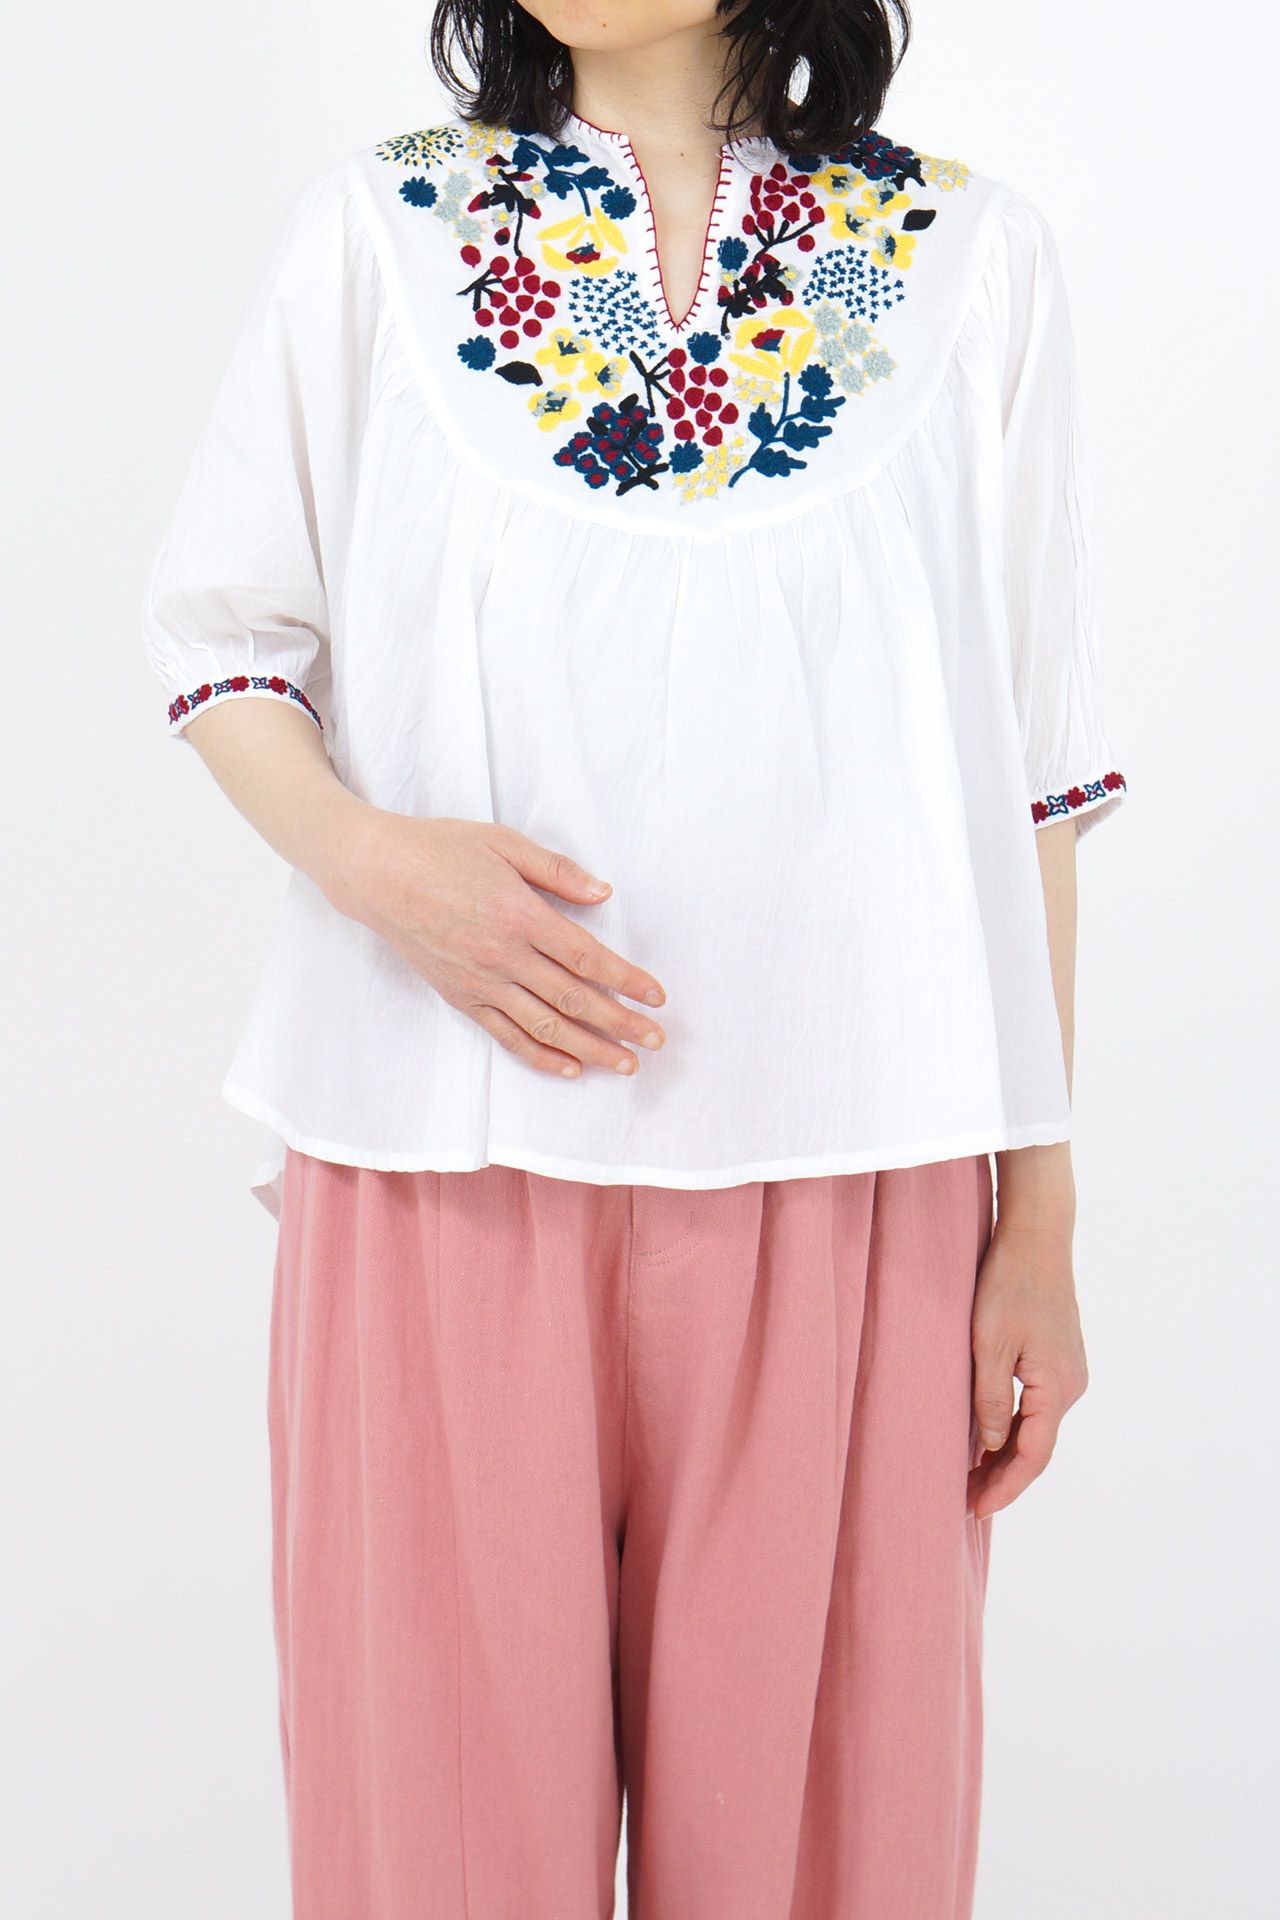 売りストア カロチャ刺繍 シャツ 保管:1237円 ブランド:アンクルージュ トップス (Tシャツ、カット、ソー)